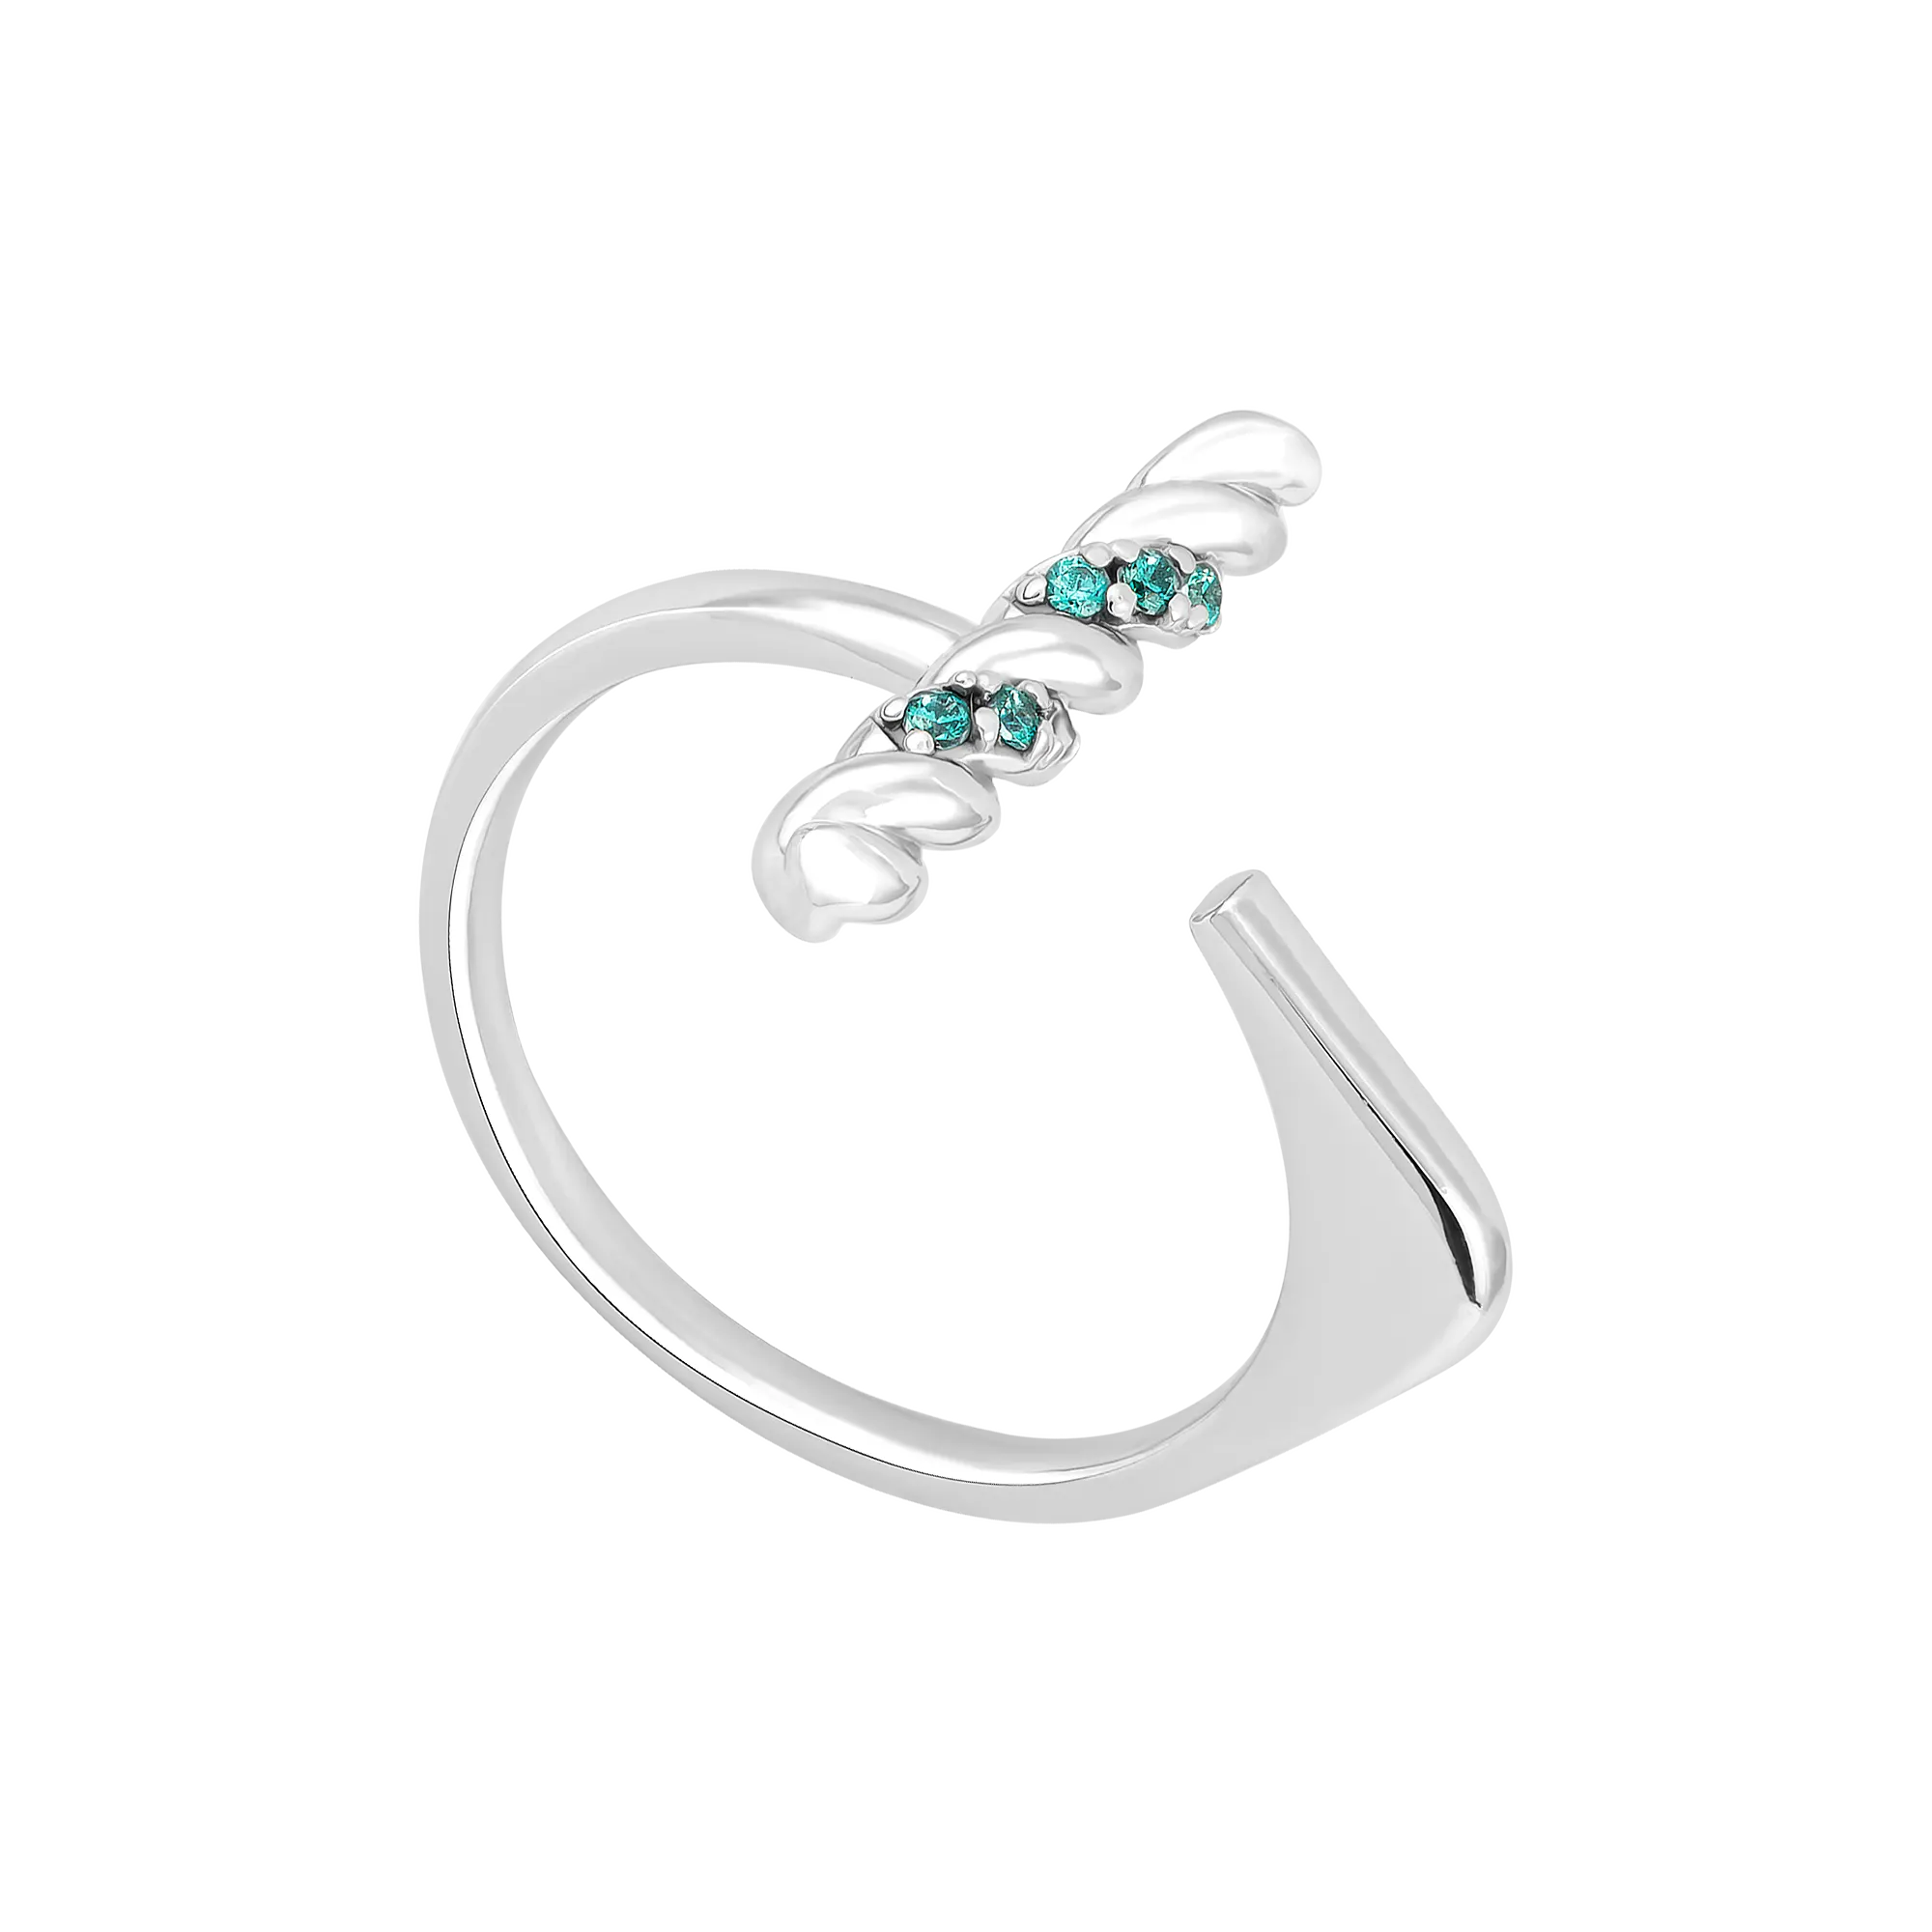 PNJ-anillo ajustable de piedras preciosas para mujer, joyería de piedras sintéticas, joyería de plata de ley 925